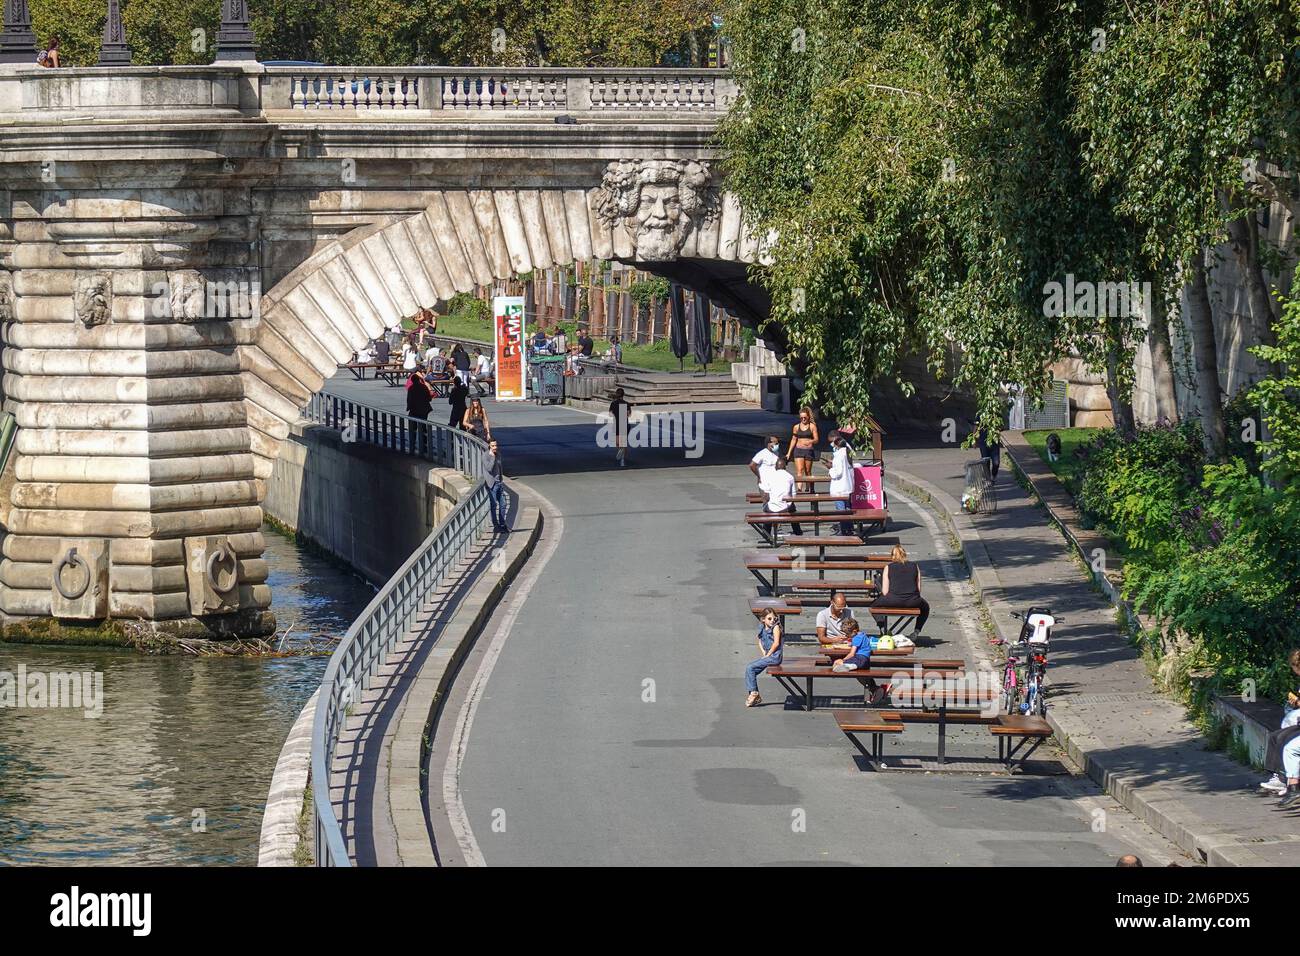 Francia, París, gente relajándose a lo largo de las orillas del río Sena Foto de archivo © Fabio Mazzarella/Sintesi/Alamy Foto de archivo Foto de stock